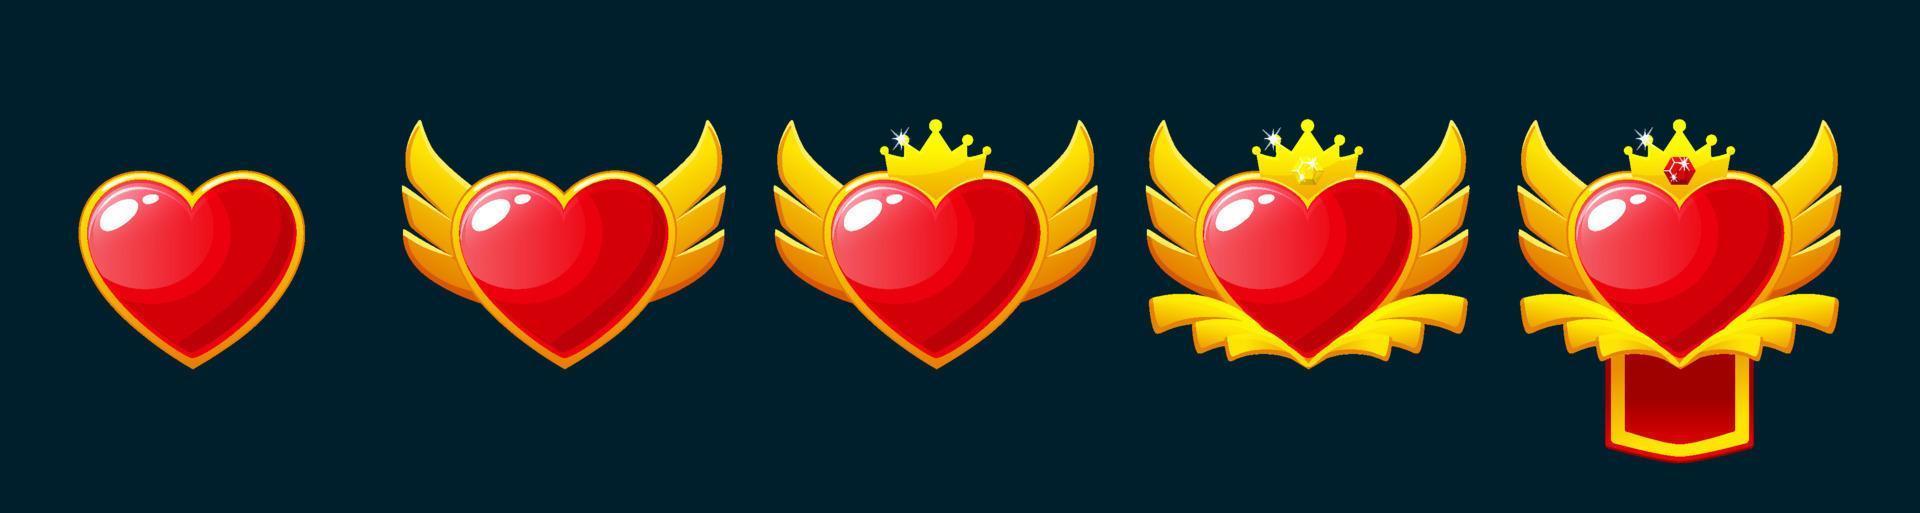 conjunto de juego rango insignias nivel arriba íconos con corazón, clasificación premios vector